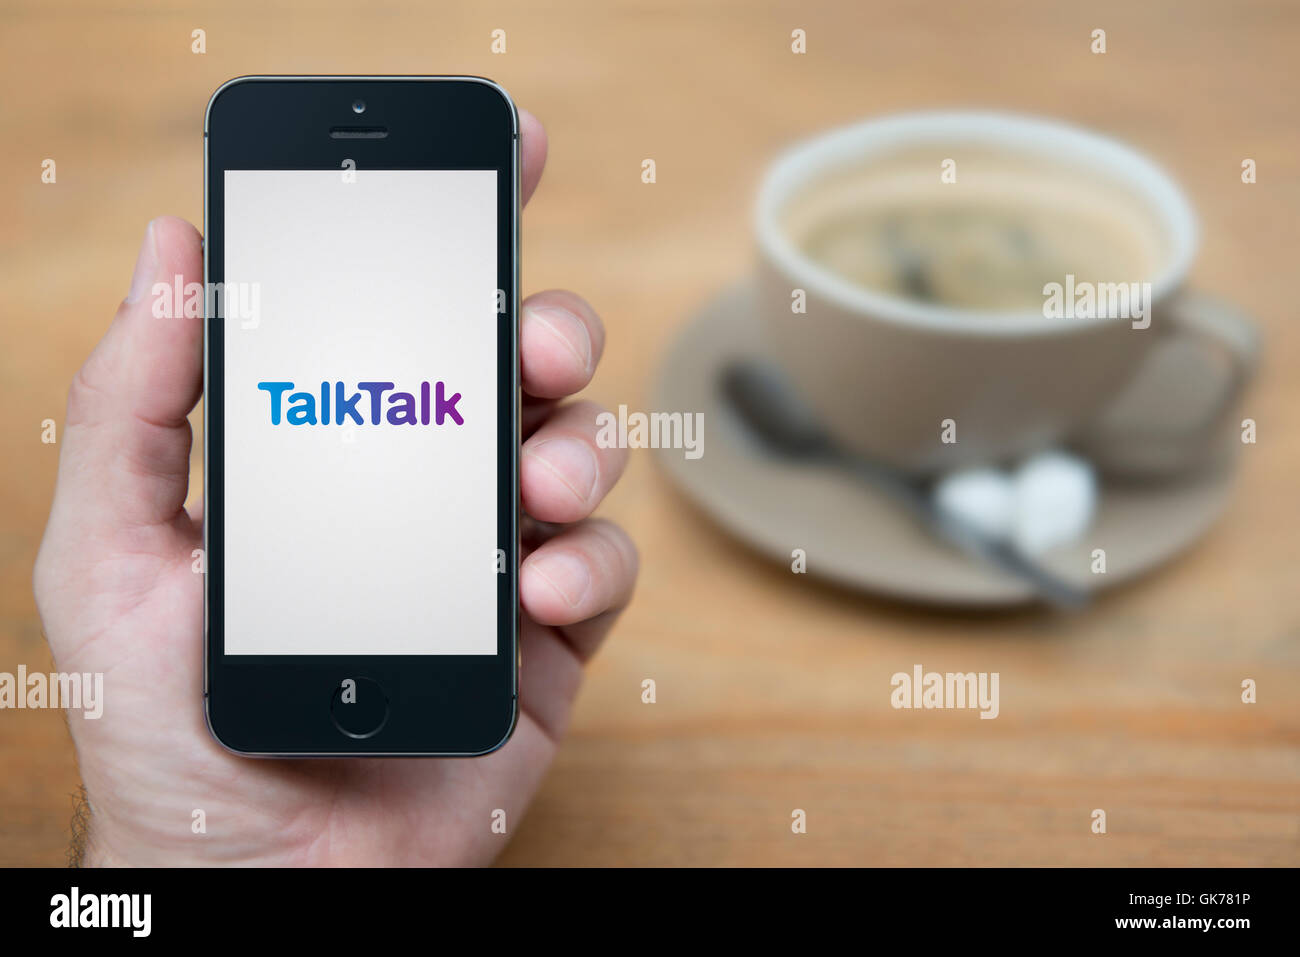 Un uomo guarda al suo iPhone che visualizza il Parlare Parlare di logo, mentre sat con una tazza di caffè (solo uso editoriale). Foto Stock